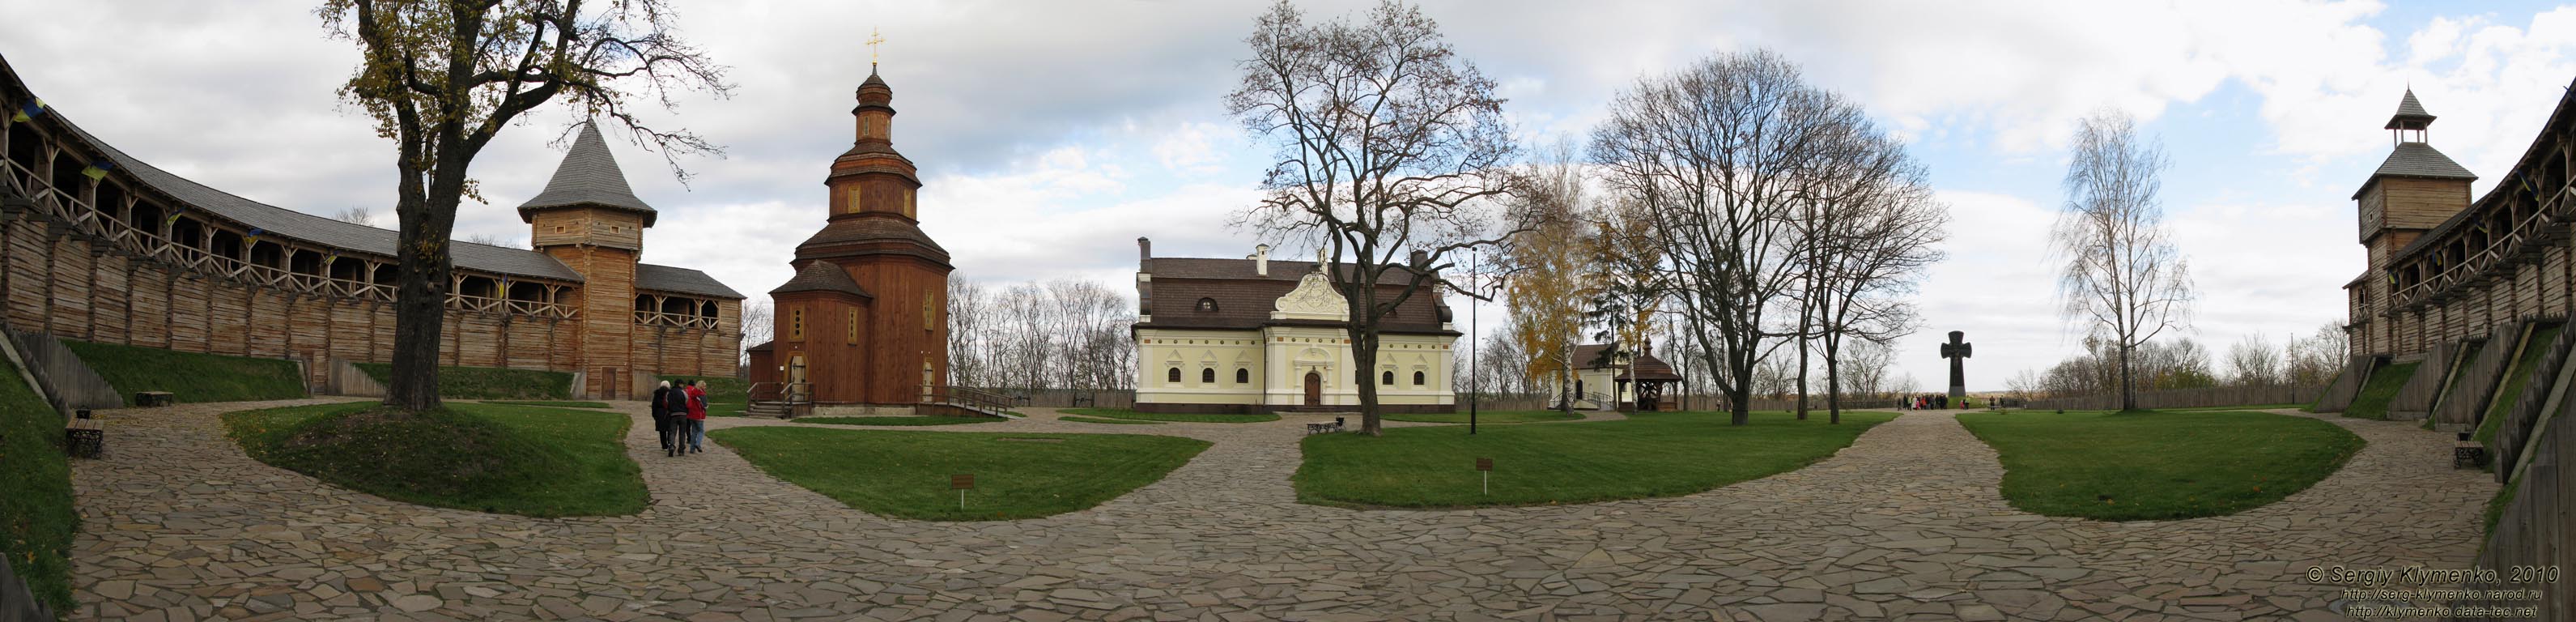 Батуринская цитадель (реконструкция, 2009 год). Вид изнутри (панорама ~180° от главного входа).